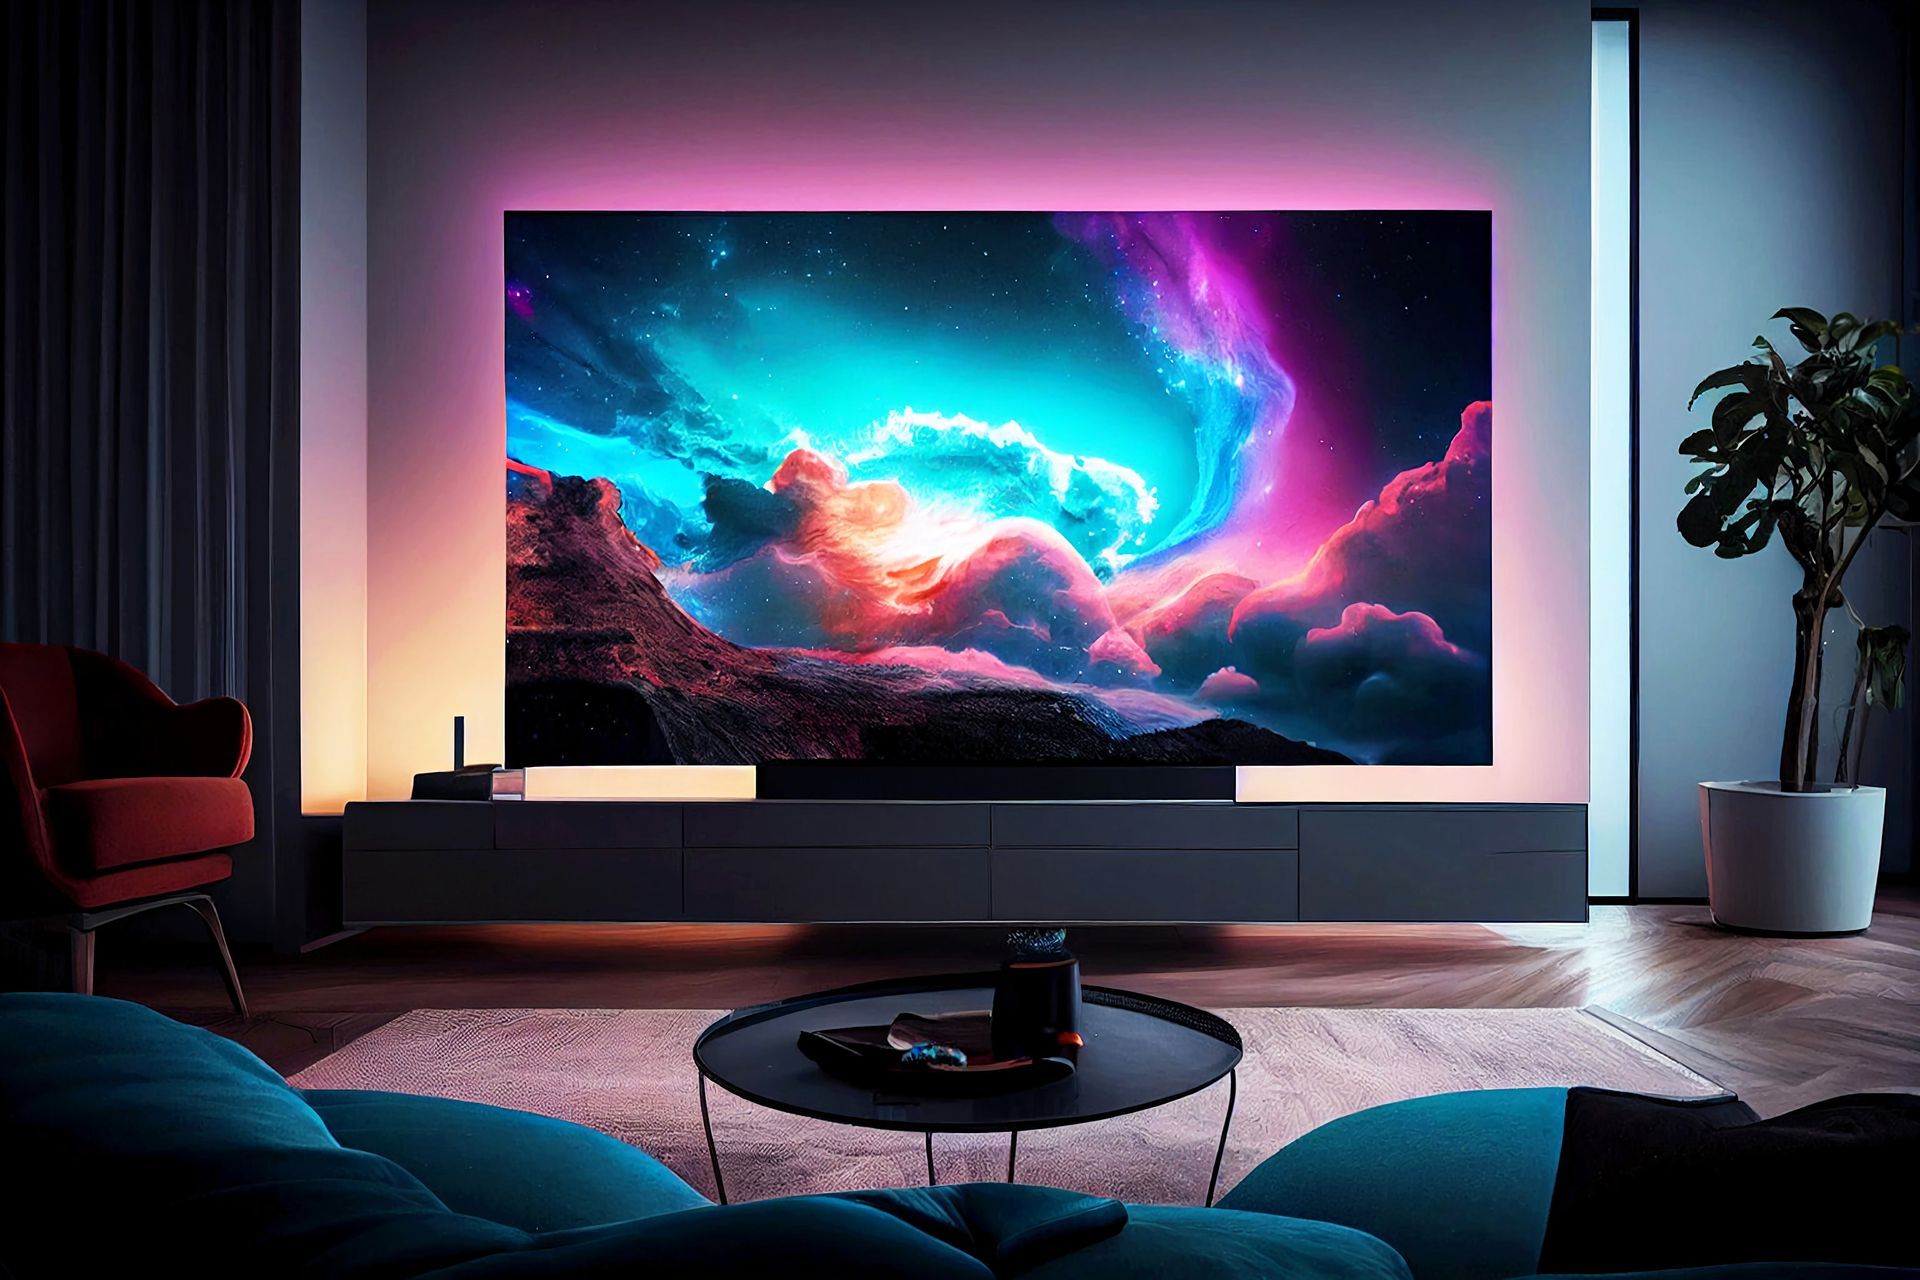 Un écran de télévision haute définition affichant un ciel coloré